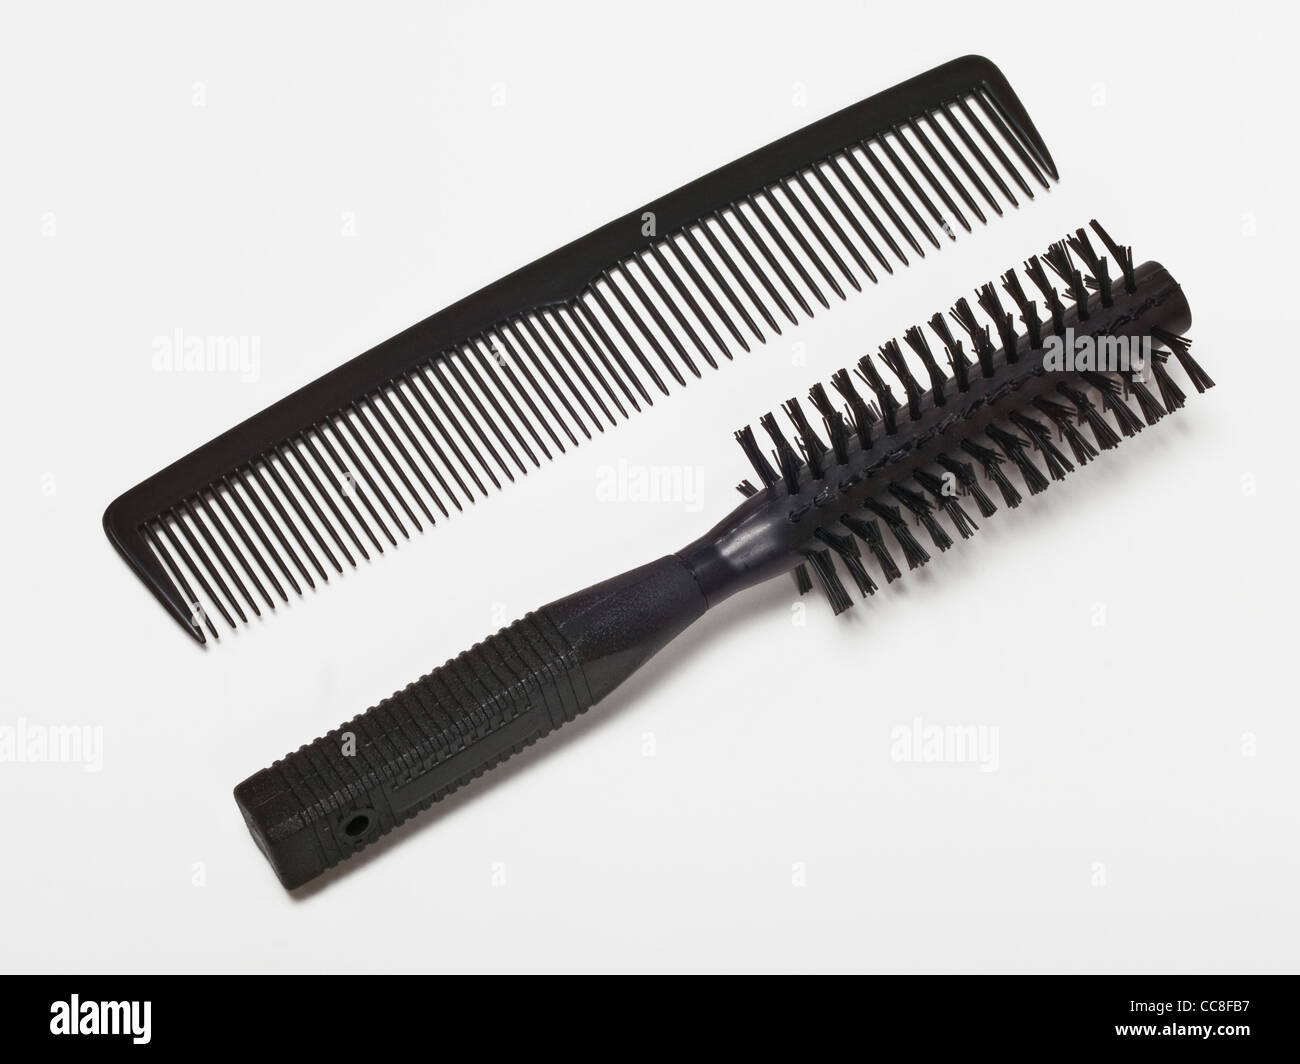 Detailansicht von Kamm Und Haarbürste | Detail-Foto von einem Kamm und einer Haarbürste Stockfoto